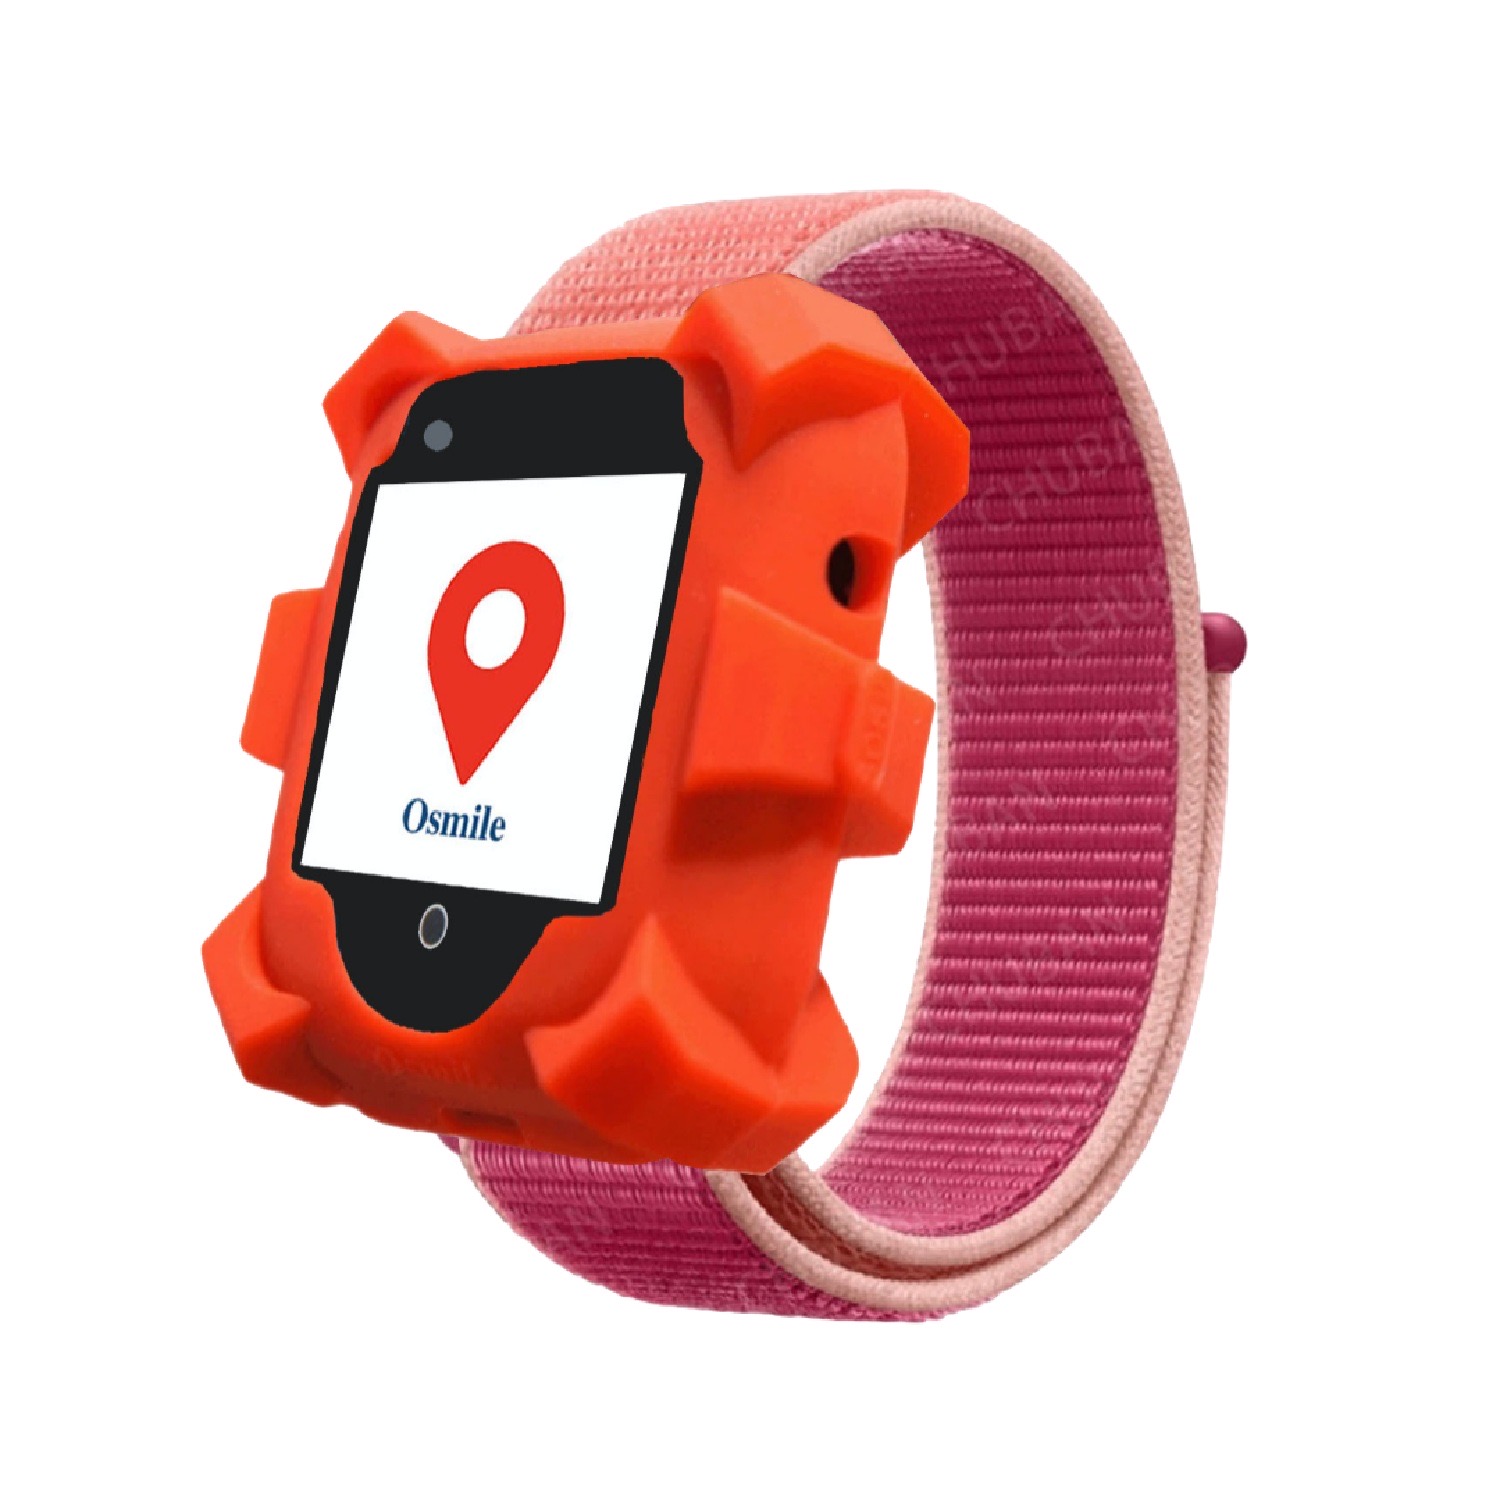 (YI) Osmile ED1000 Tracker GPS robuste, montre GPS, bracelet intelligent, montre intelligente pour villages de santé, établissements de soins pour personnes âgées, maisons de retraite, services de soins à domicile